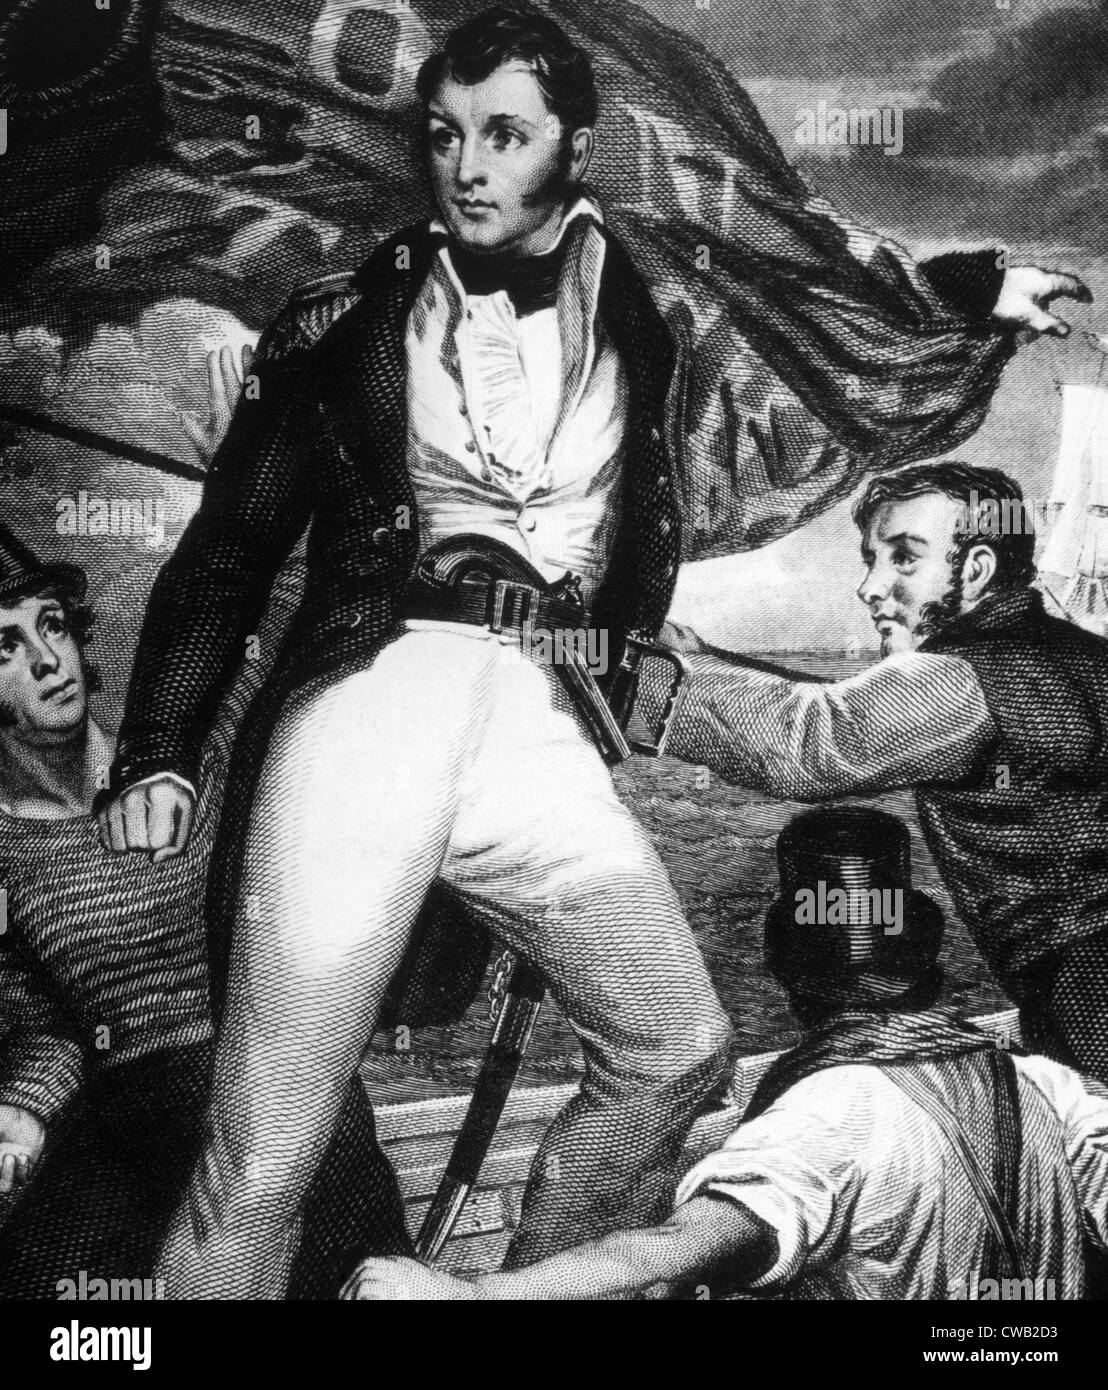 El Comodoro Perry Oliver peligro durante la batalla del lago Erie, 1813 Foto de stock